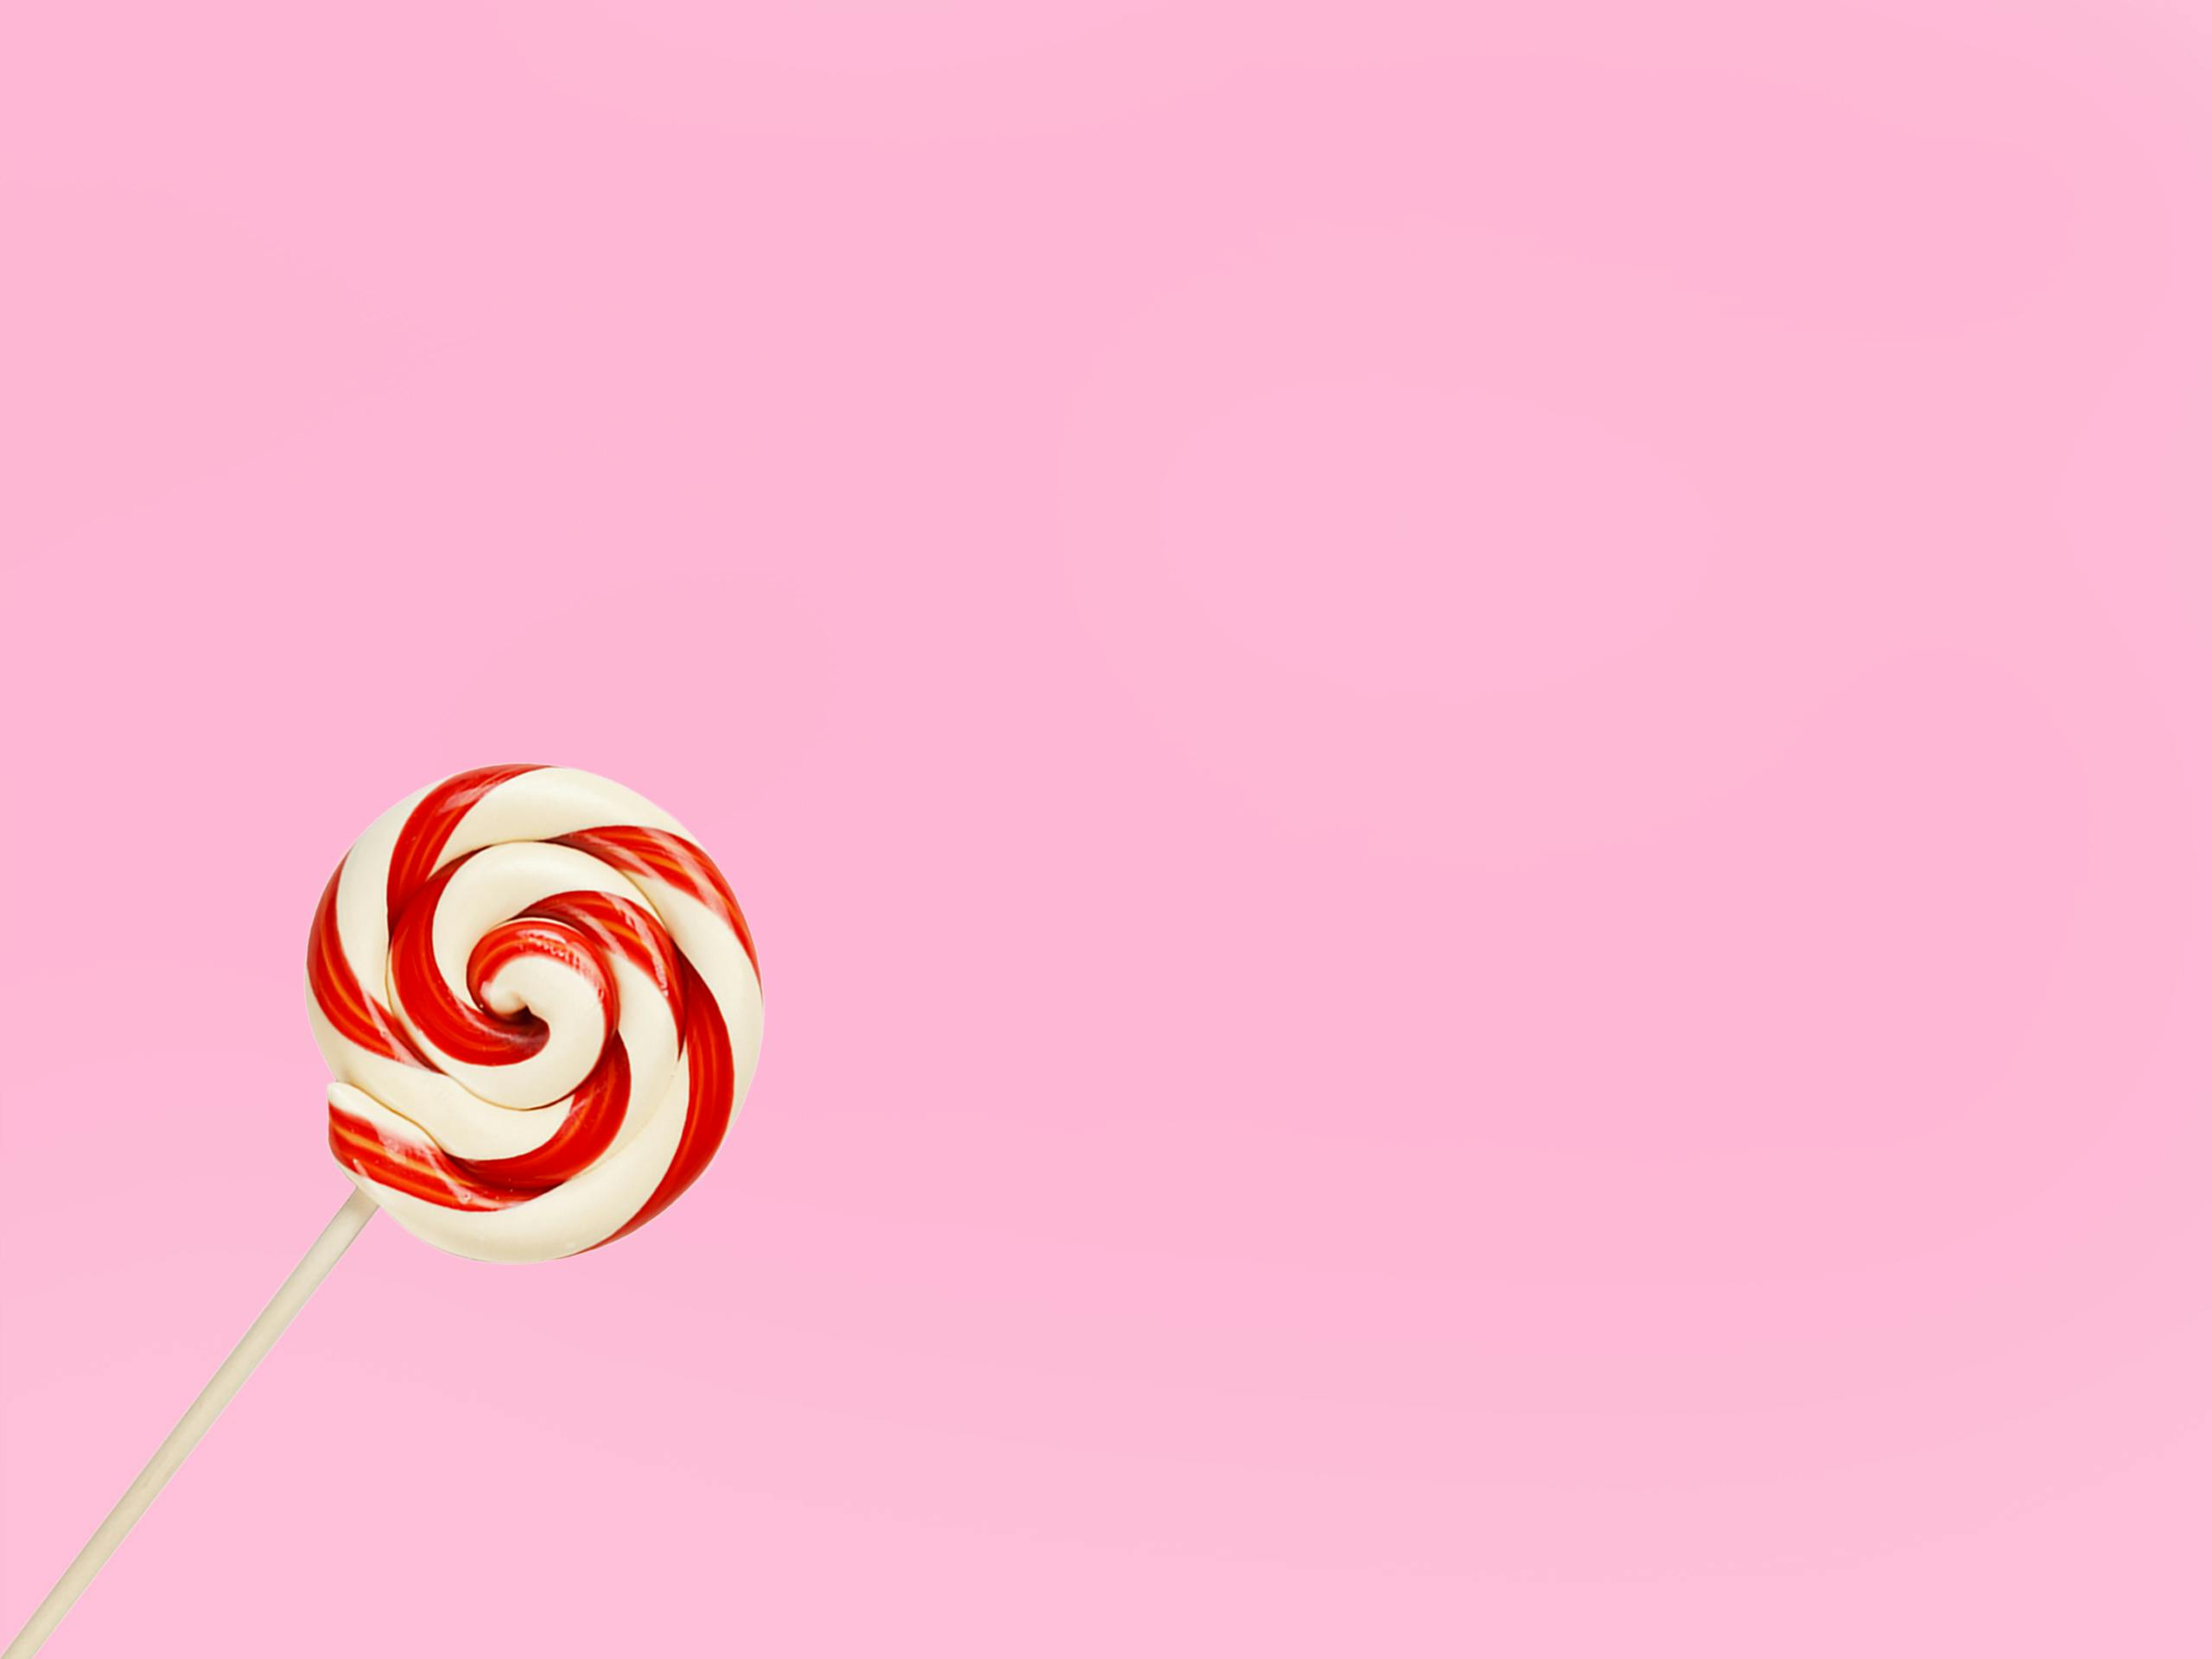 Colorful Chocolate Candies And Lollipop On Pink Pastel Background  Lizenzfreie Fotos Bilder und Stock Fotografie Image 99578872